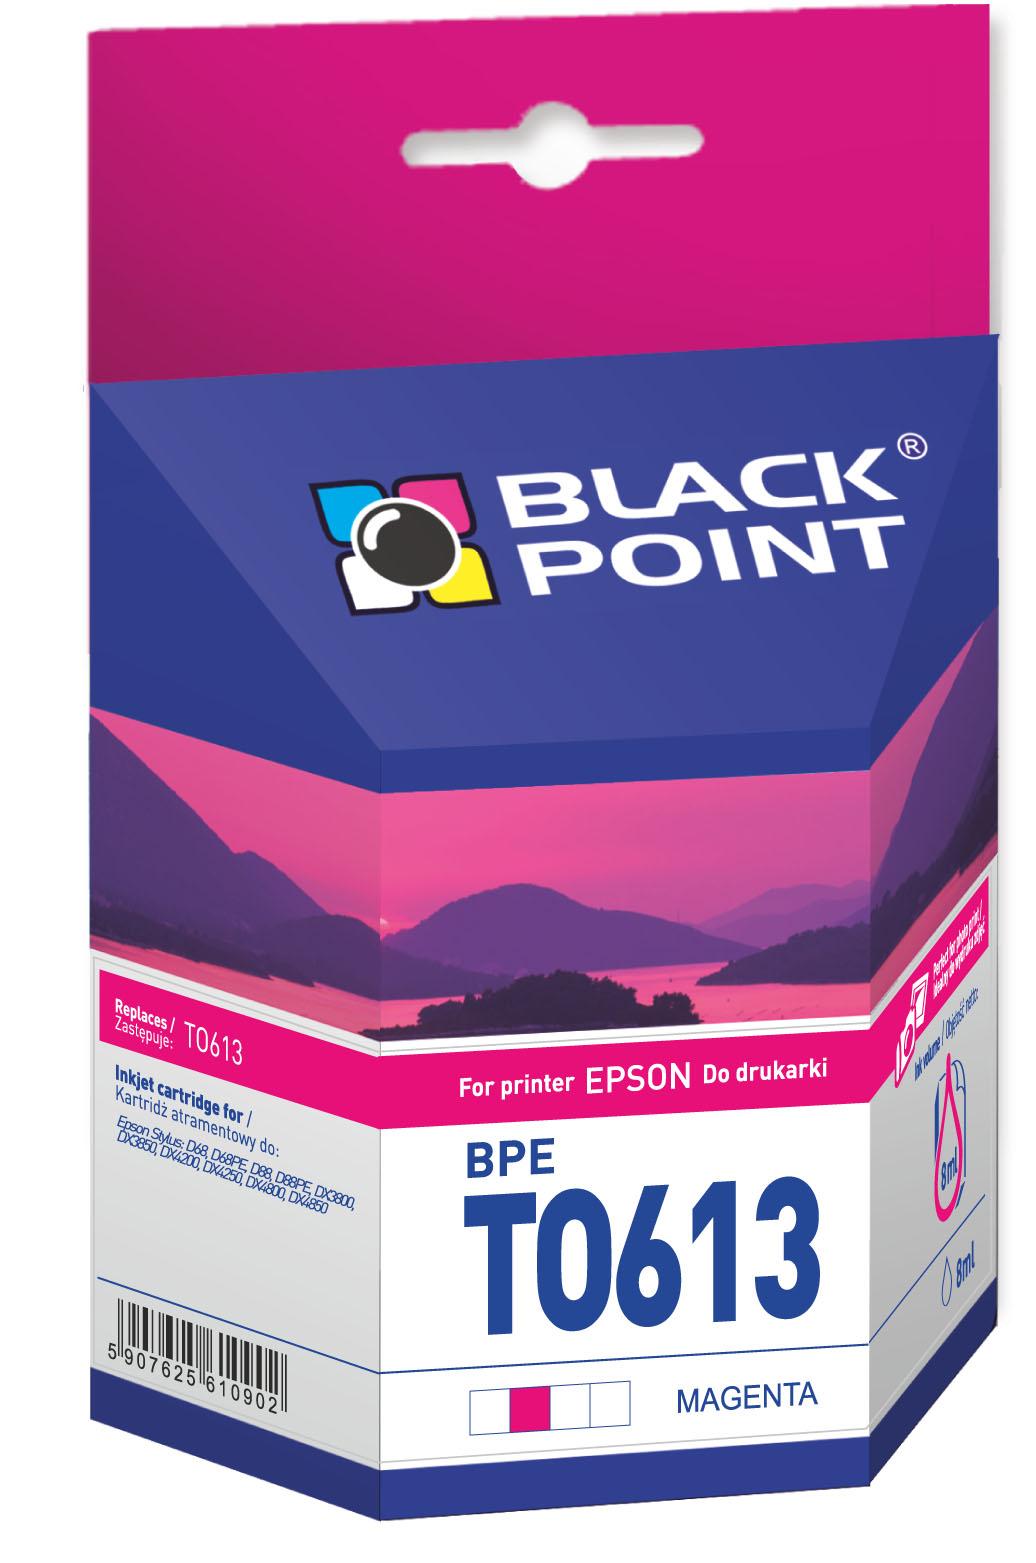 CMYK - Black Point tusz BPET0613 zastępuje Epson T0613, czerwony